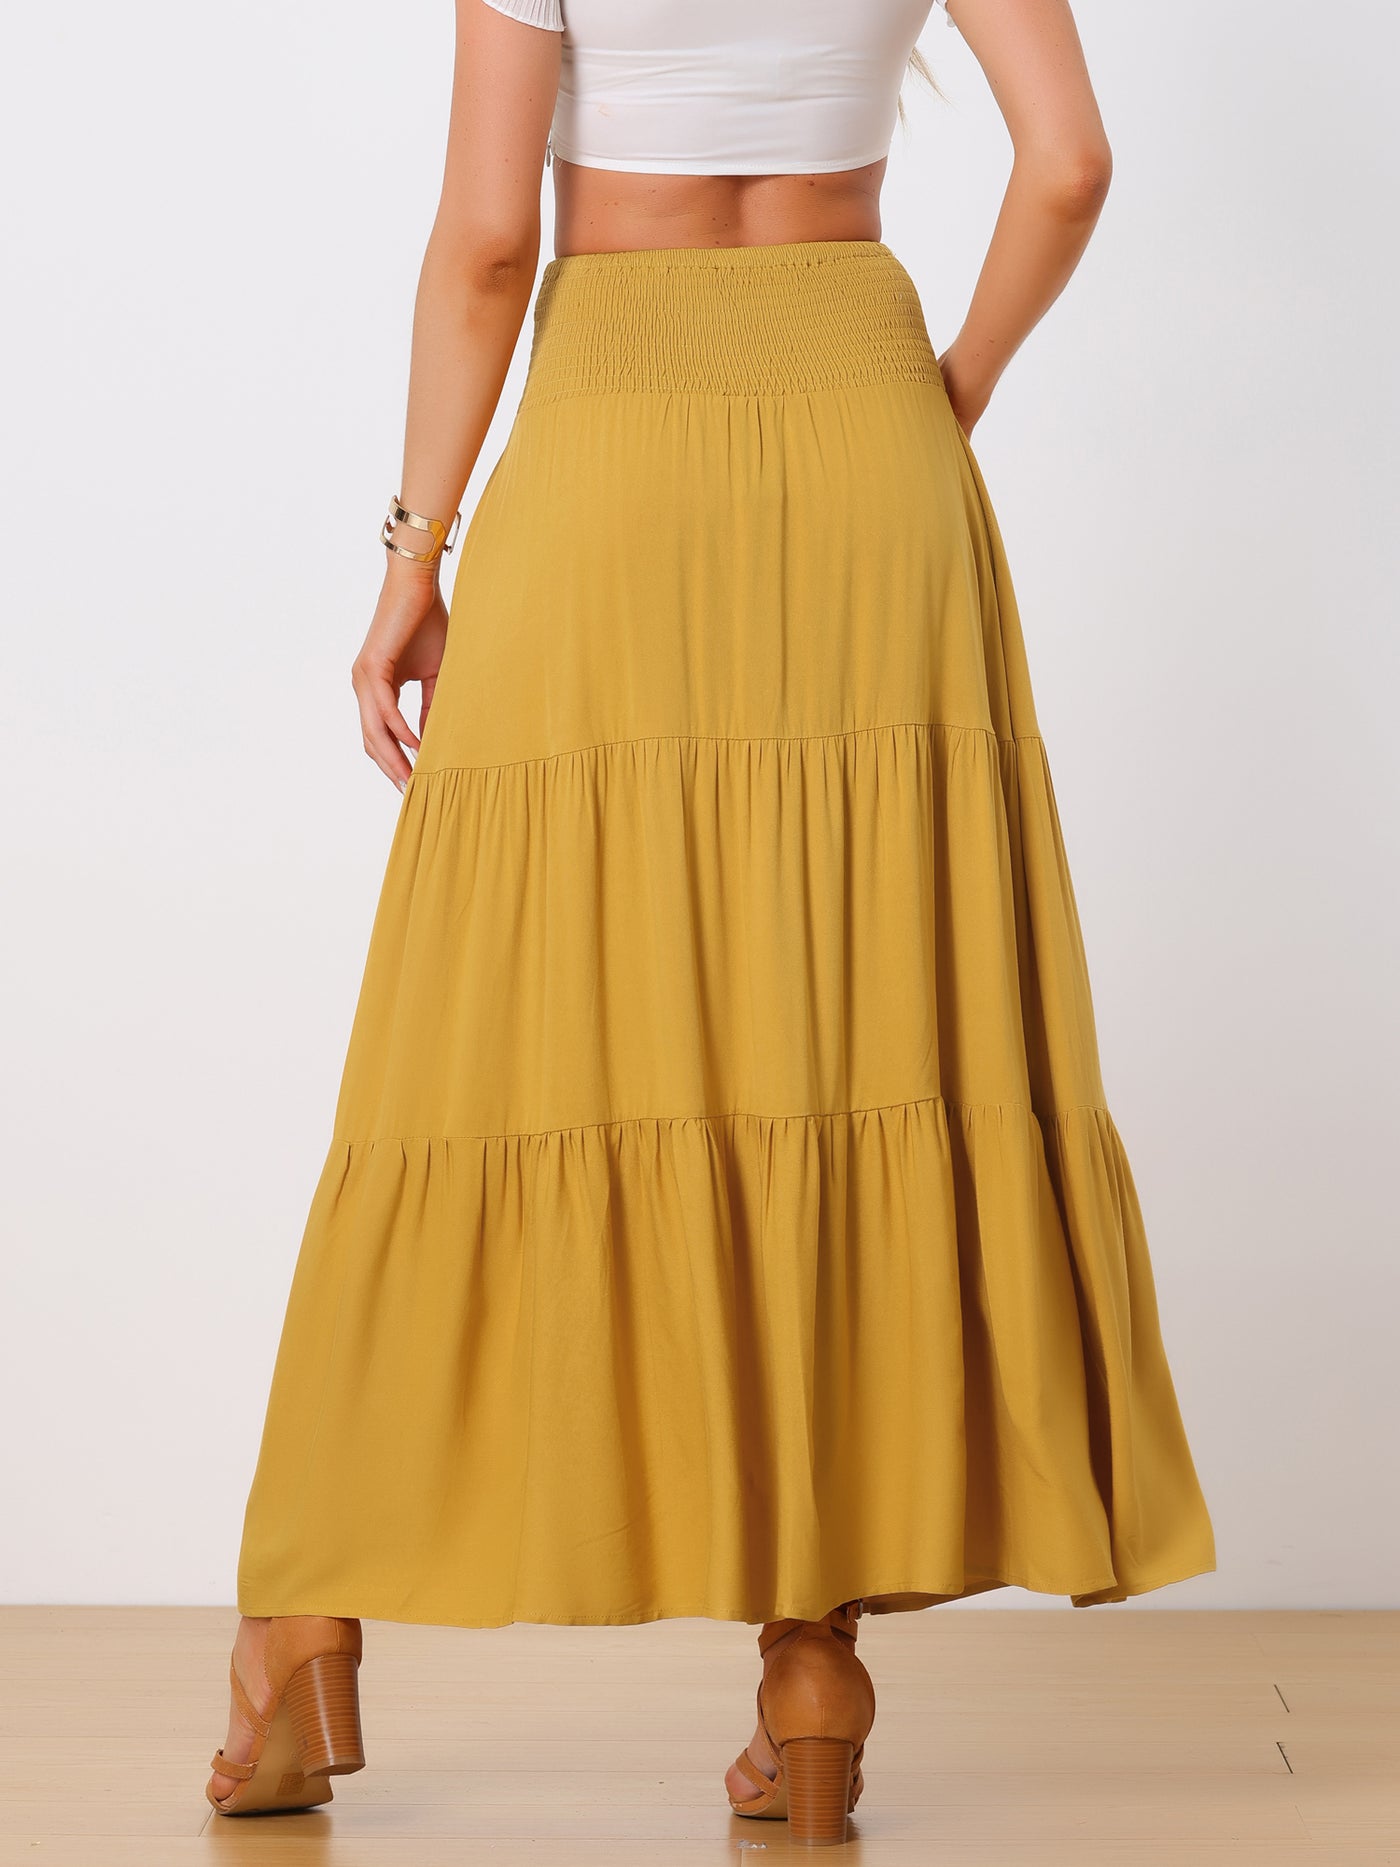 Allegra K Summer Maxi Skirt for Women's Casual Elastic High Waist Tiered Boho Long Skirts